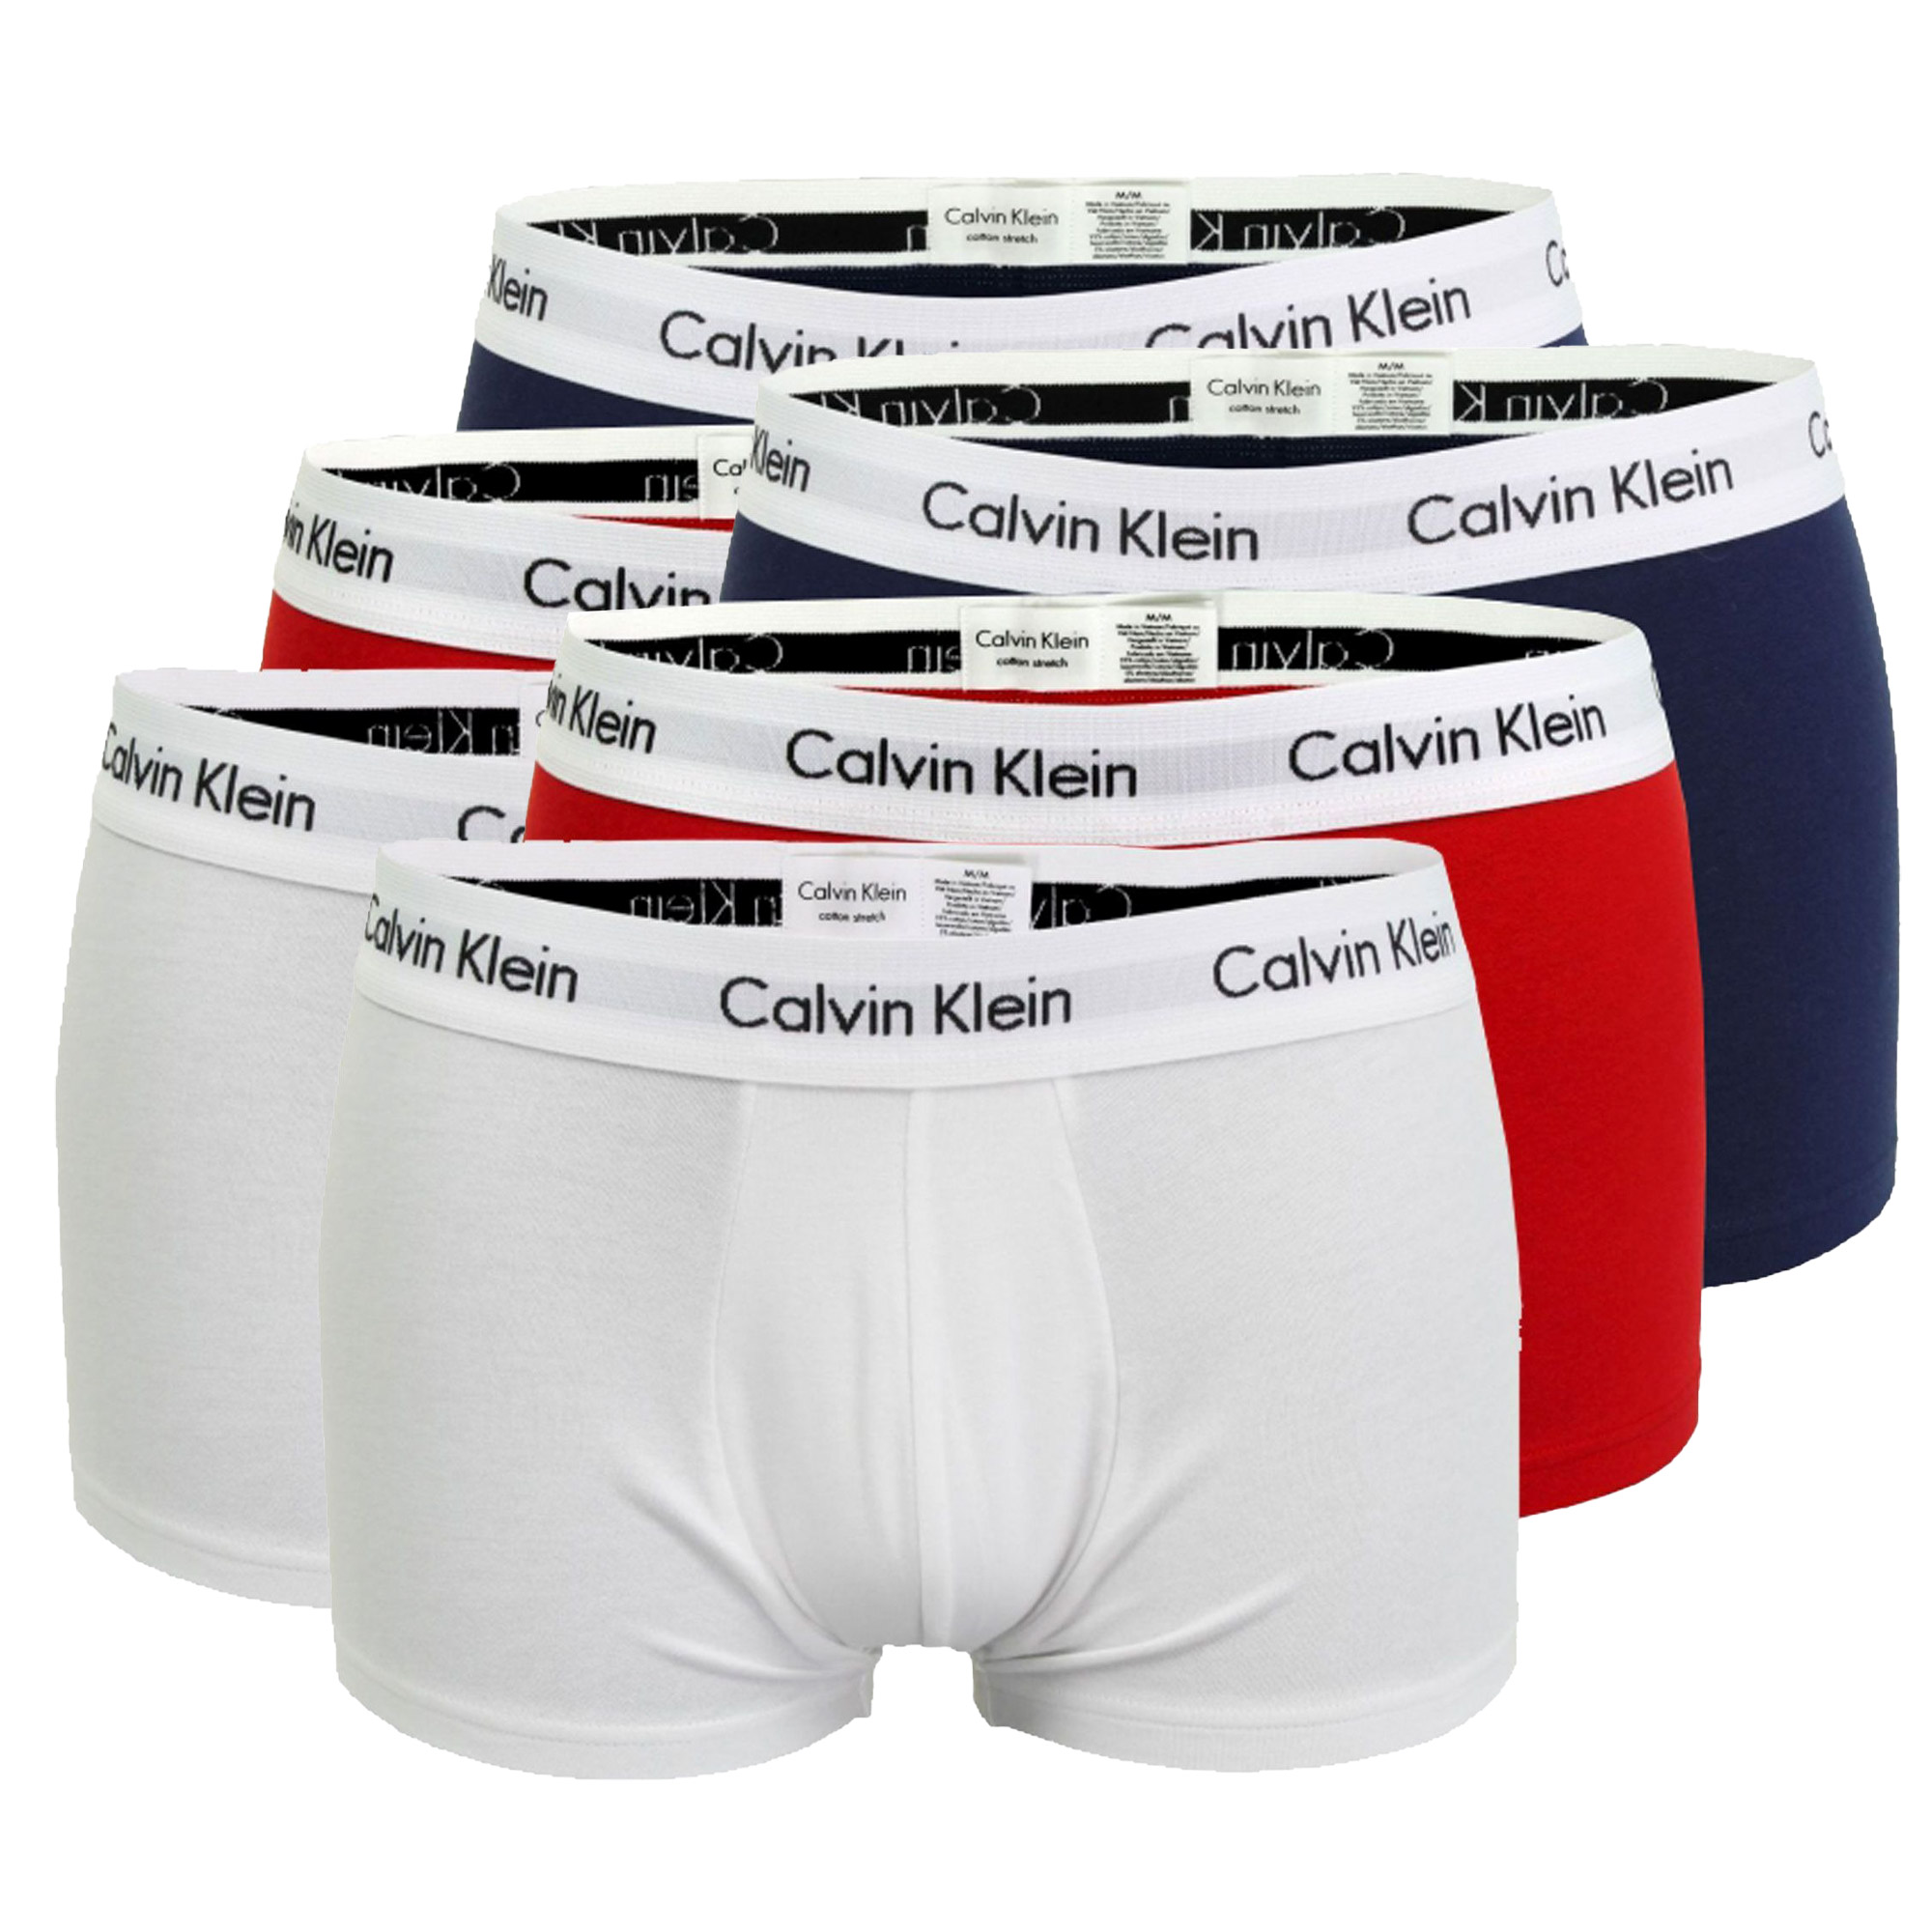 Boxer-shorts Calvin Klein Lo Rise Hommes (Lot de 6)